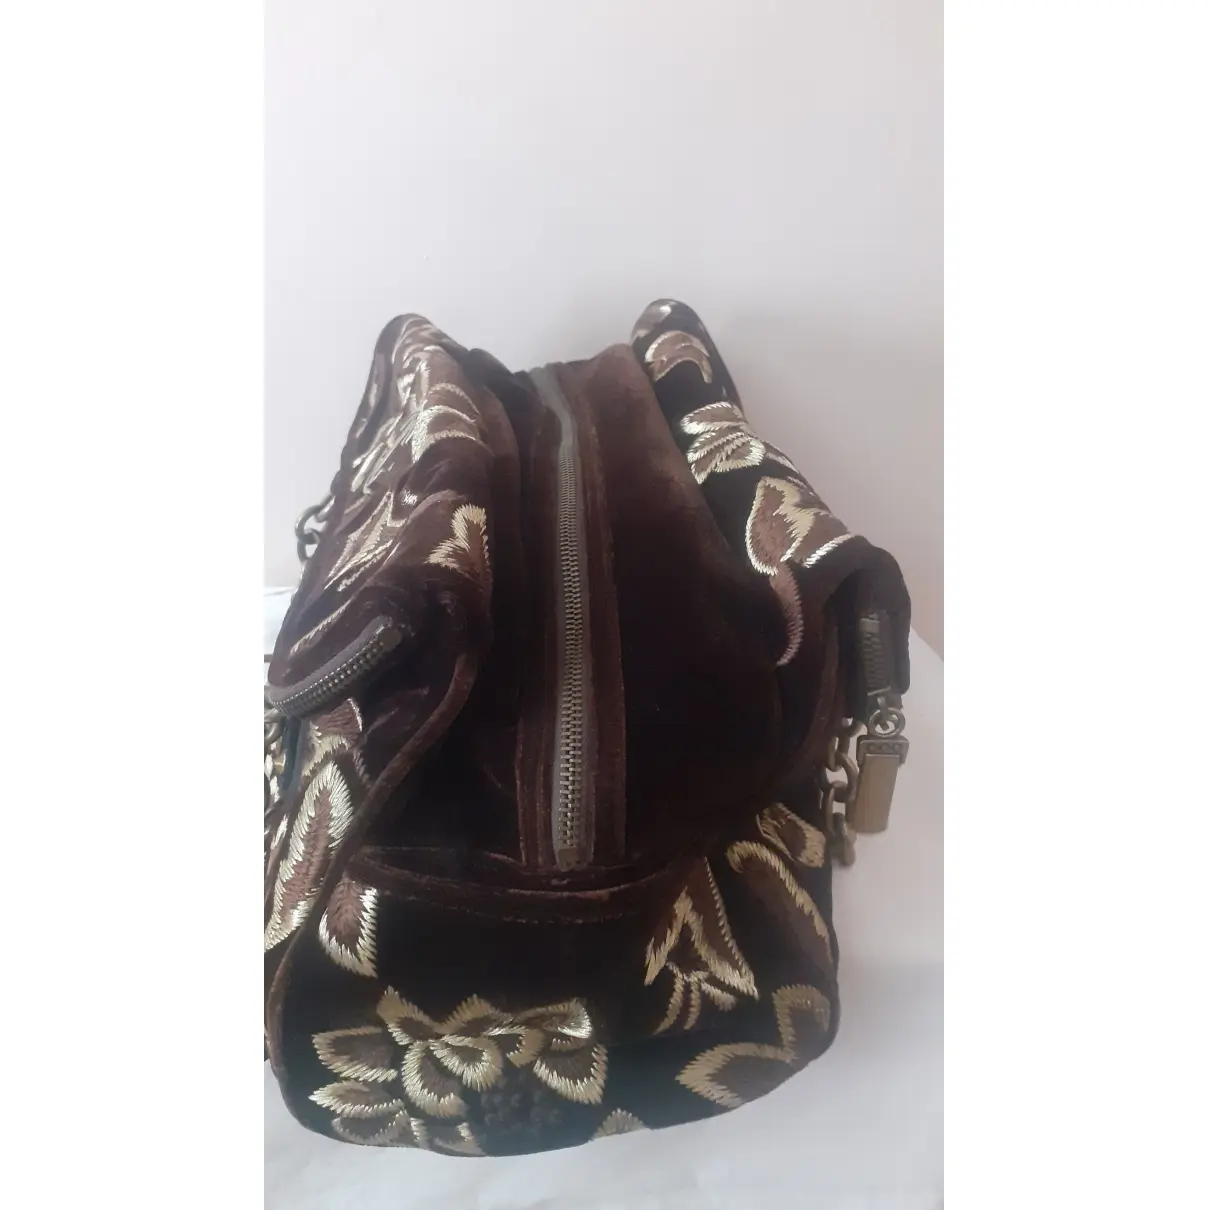 Velvet handbag Just Cavalli - Vintage